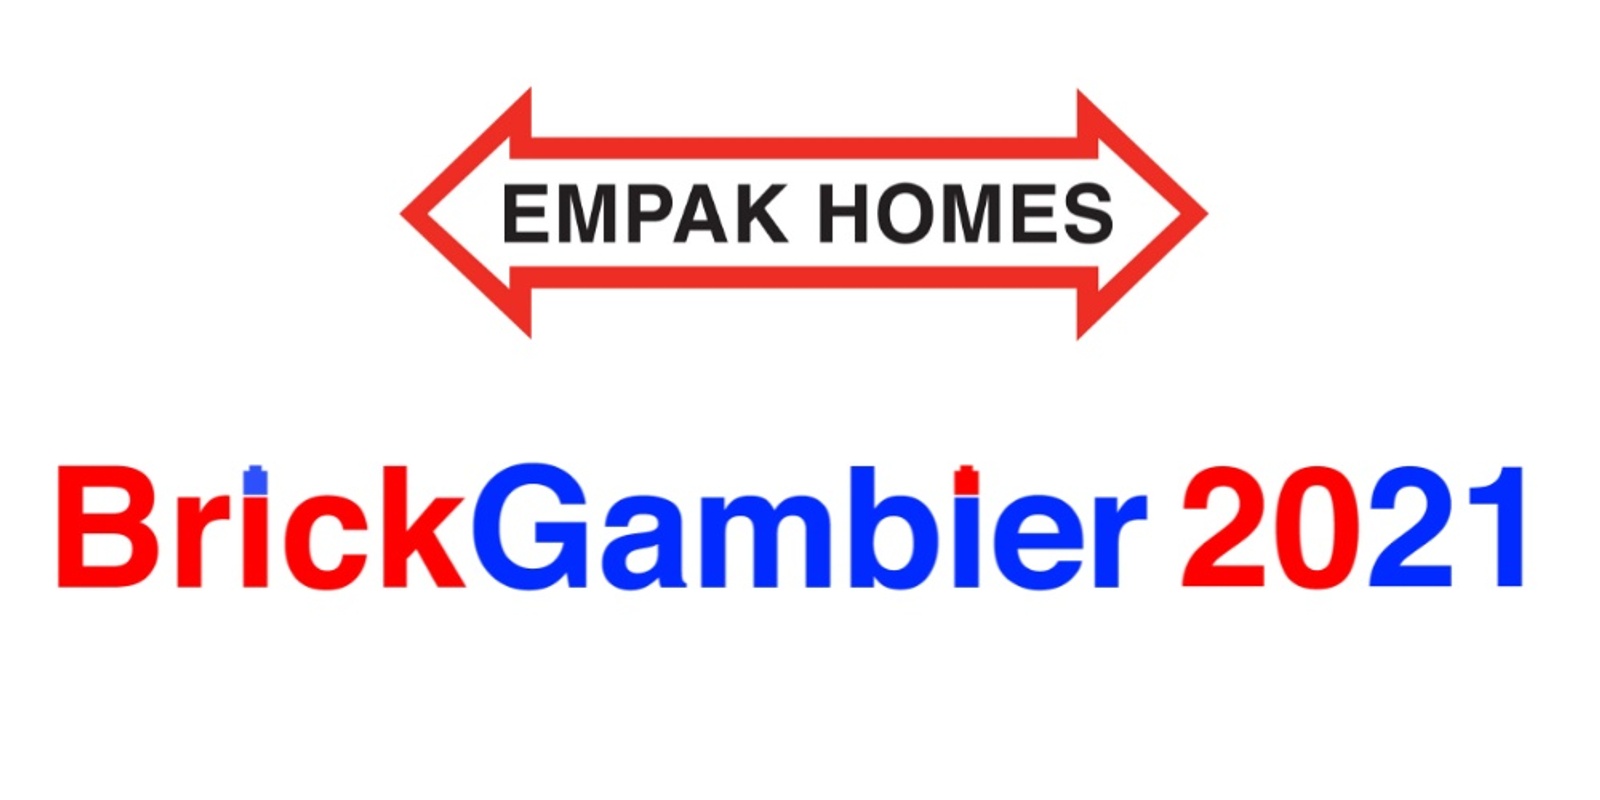 Banner image for EMPAK HOMES BrickGambier 2021